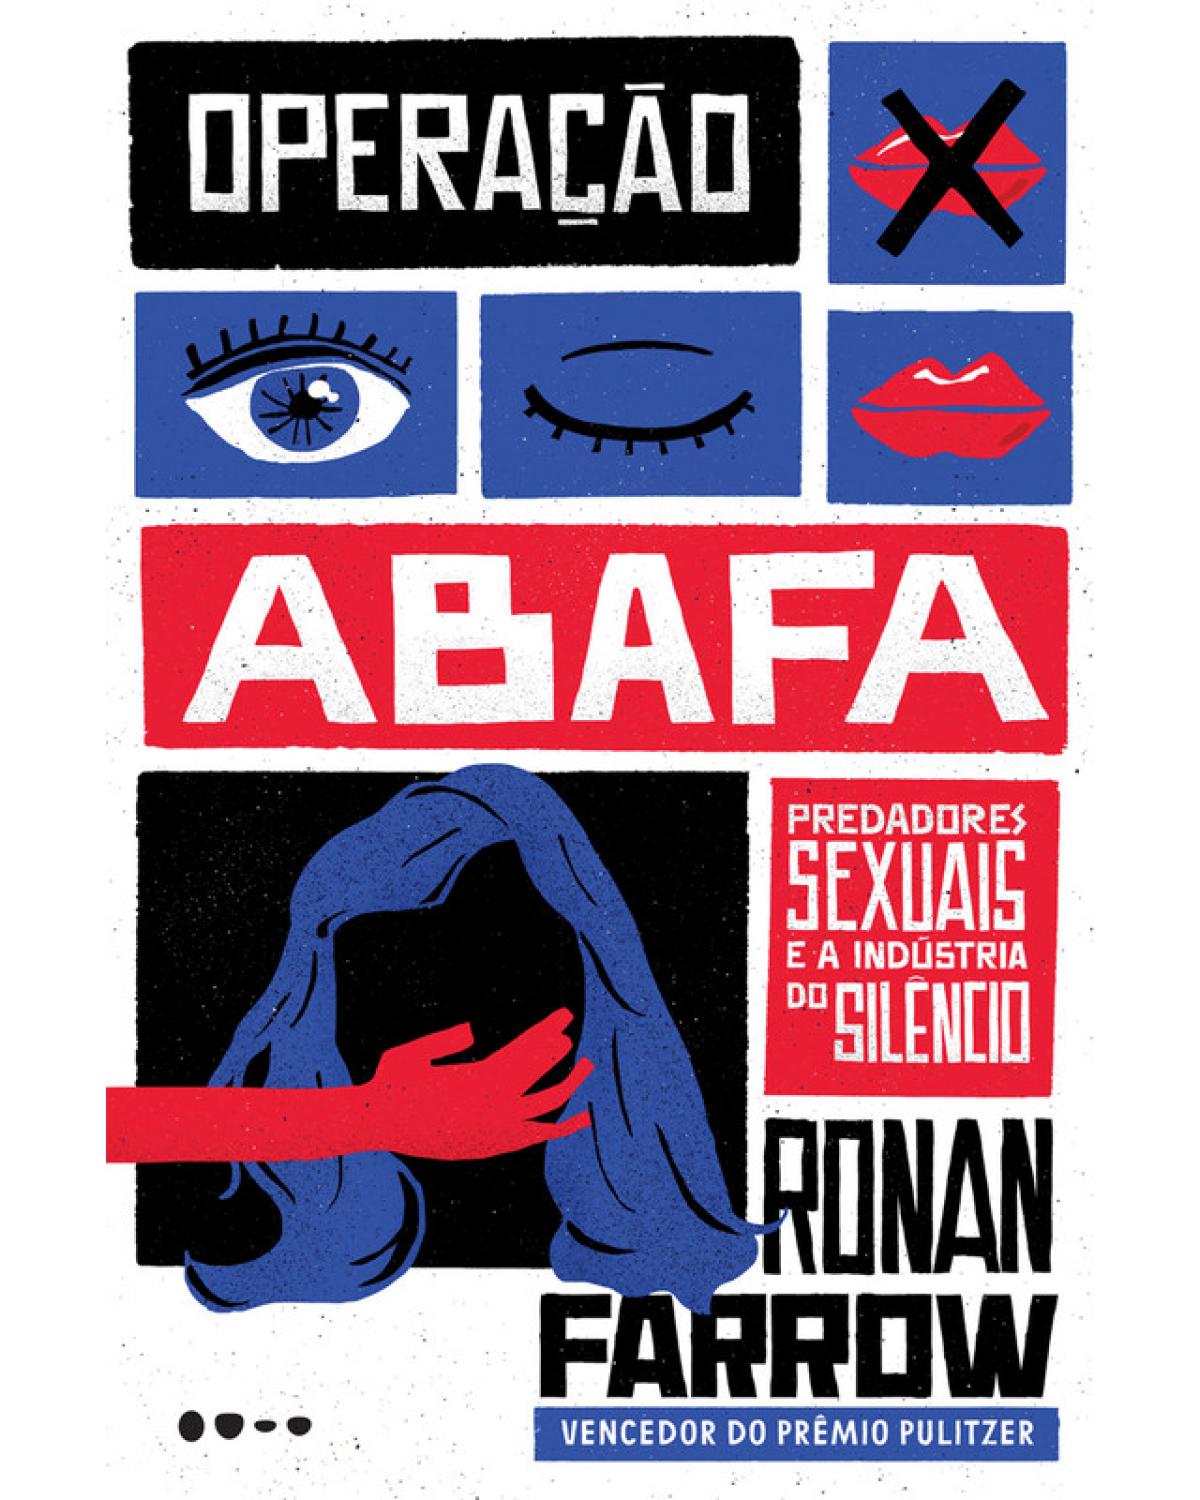 Operação Abafa: Predadores sexuais e a indústria do silêncio